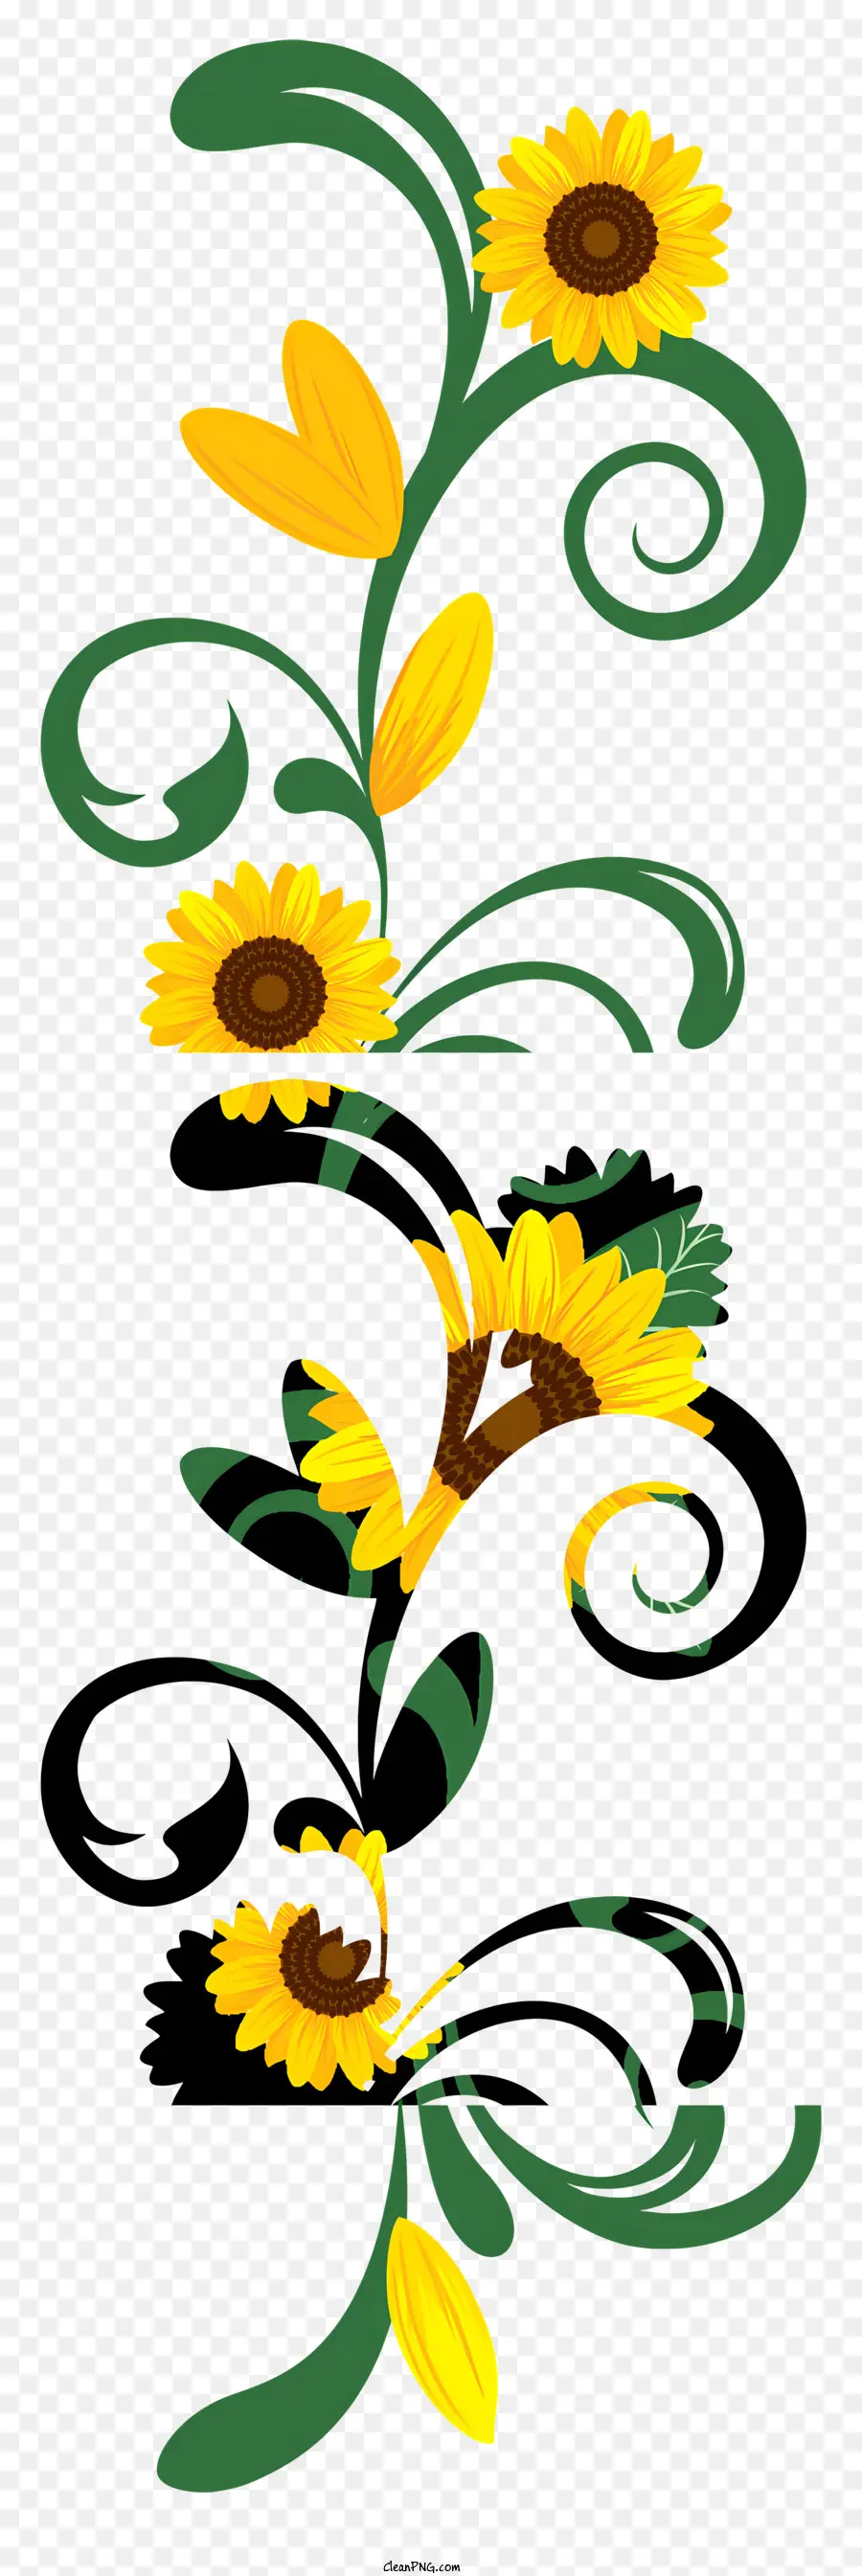 Blumen Linie - Gelbe Sonnenblumen in einem Spiralmuster angeordnet